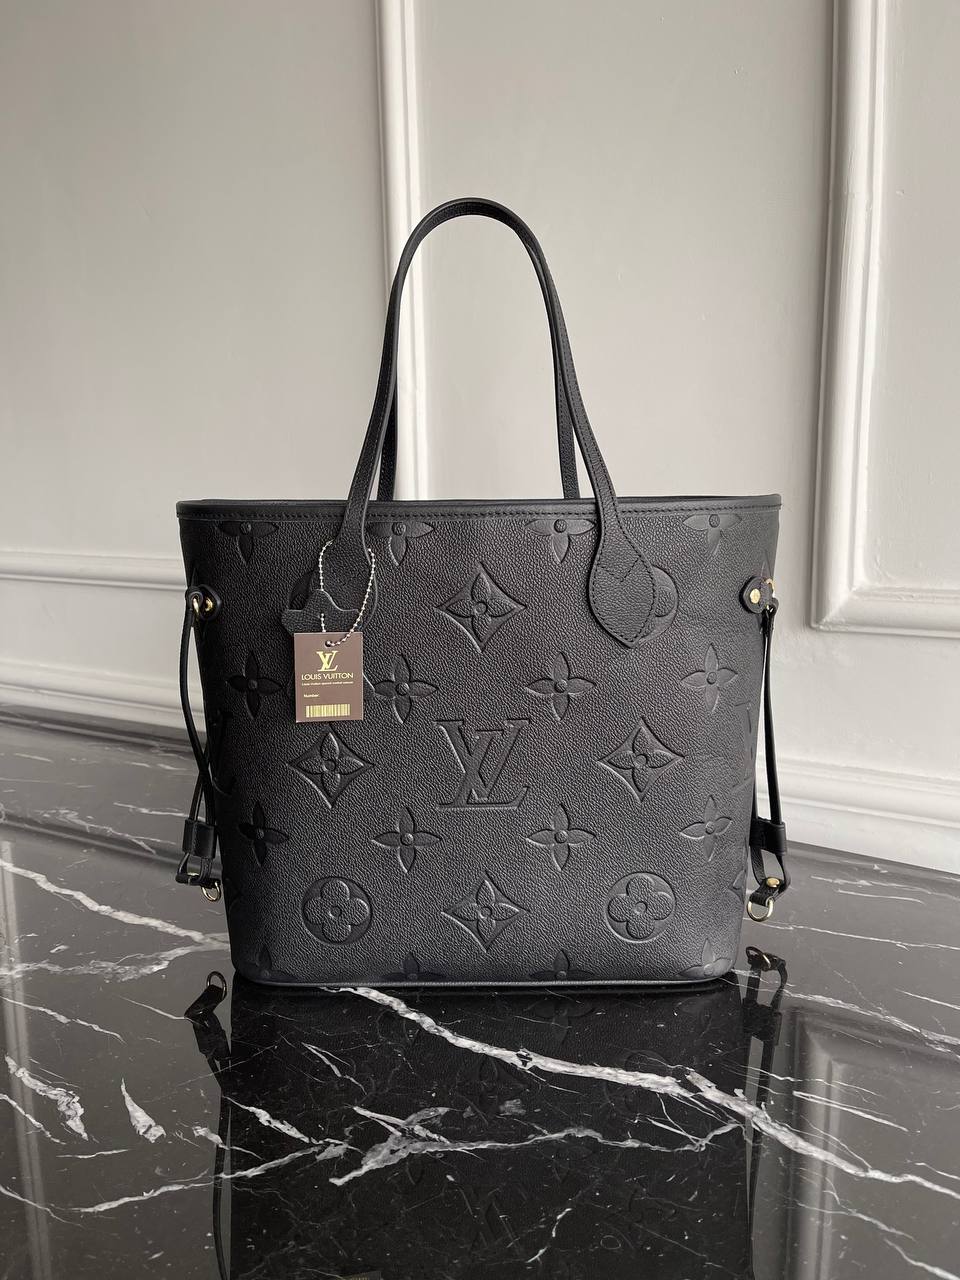 Gibt es die Louis Vuitton Neverfull in der Farbe schwarz-grau